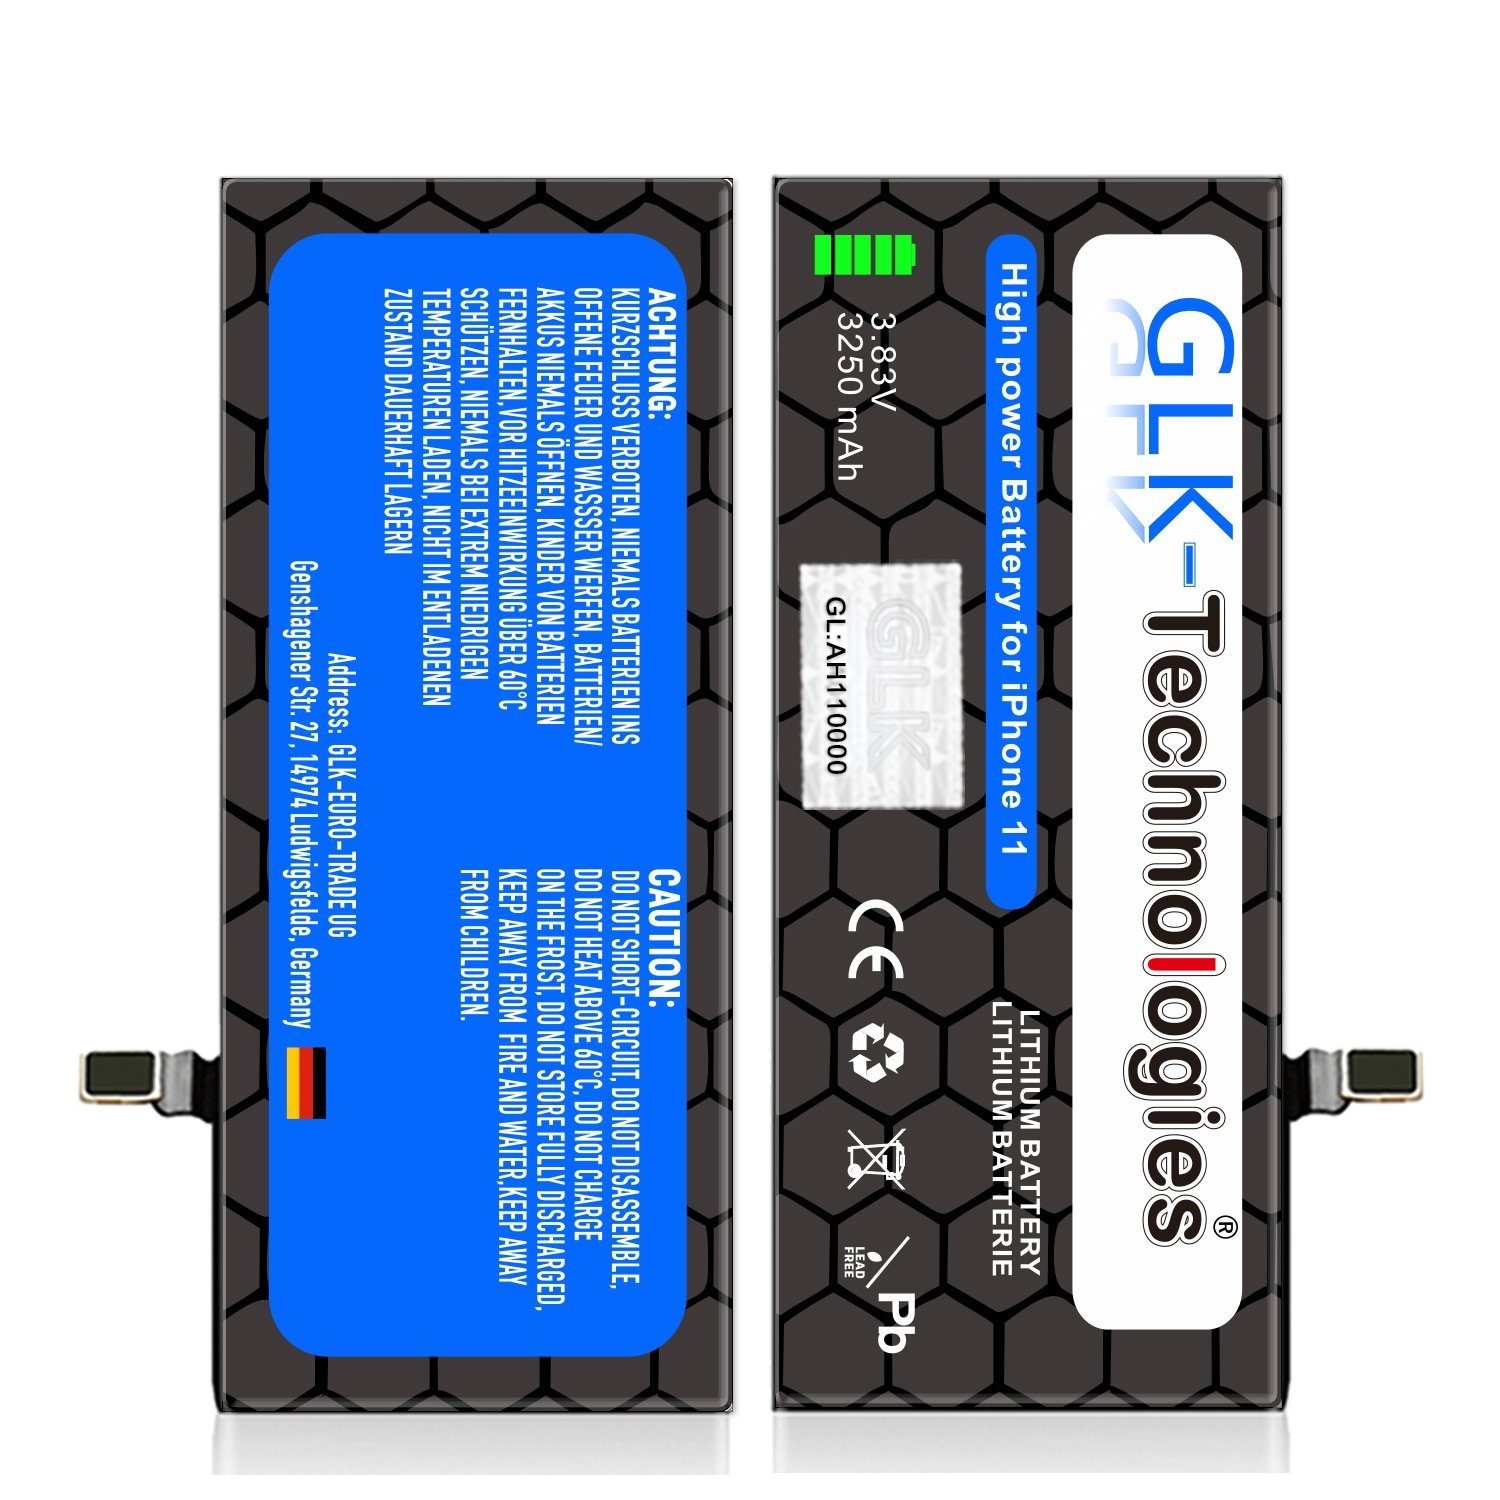 V) Apple für Akku iPhone 2X GLK-Technologies inkl. Power 3250 High 11 Smartphone-Akku mAh Ersatz (3,8 Klebebandsätze